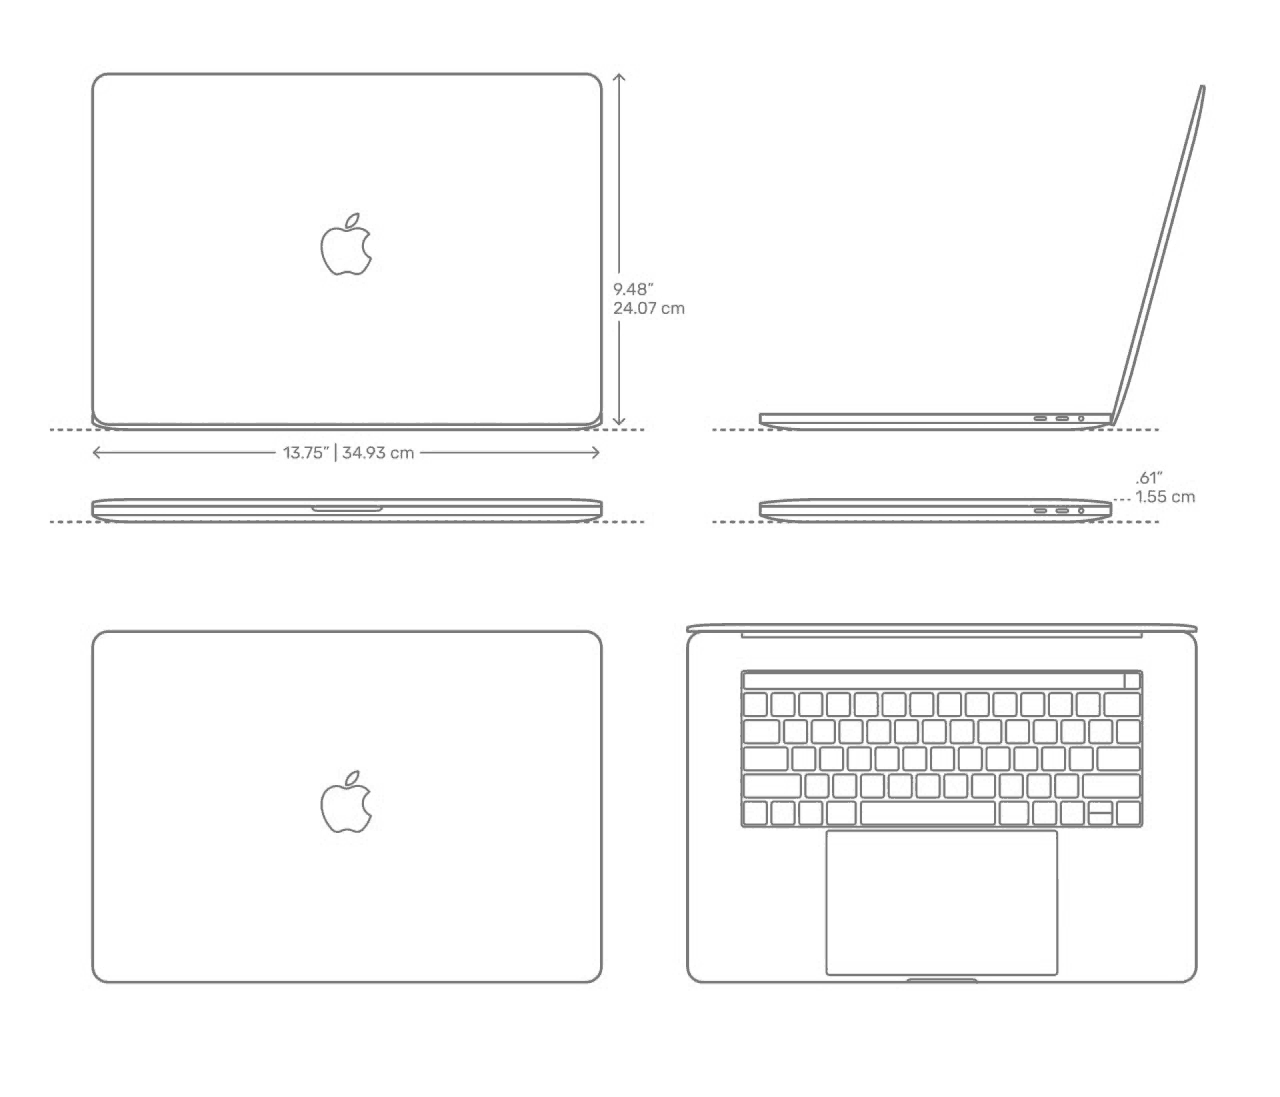 Macbook Pro blueprint